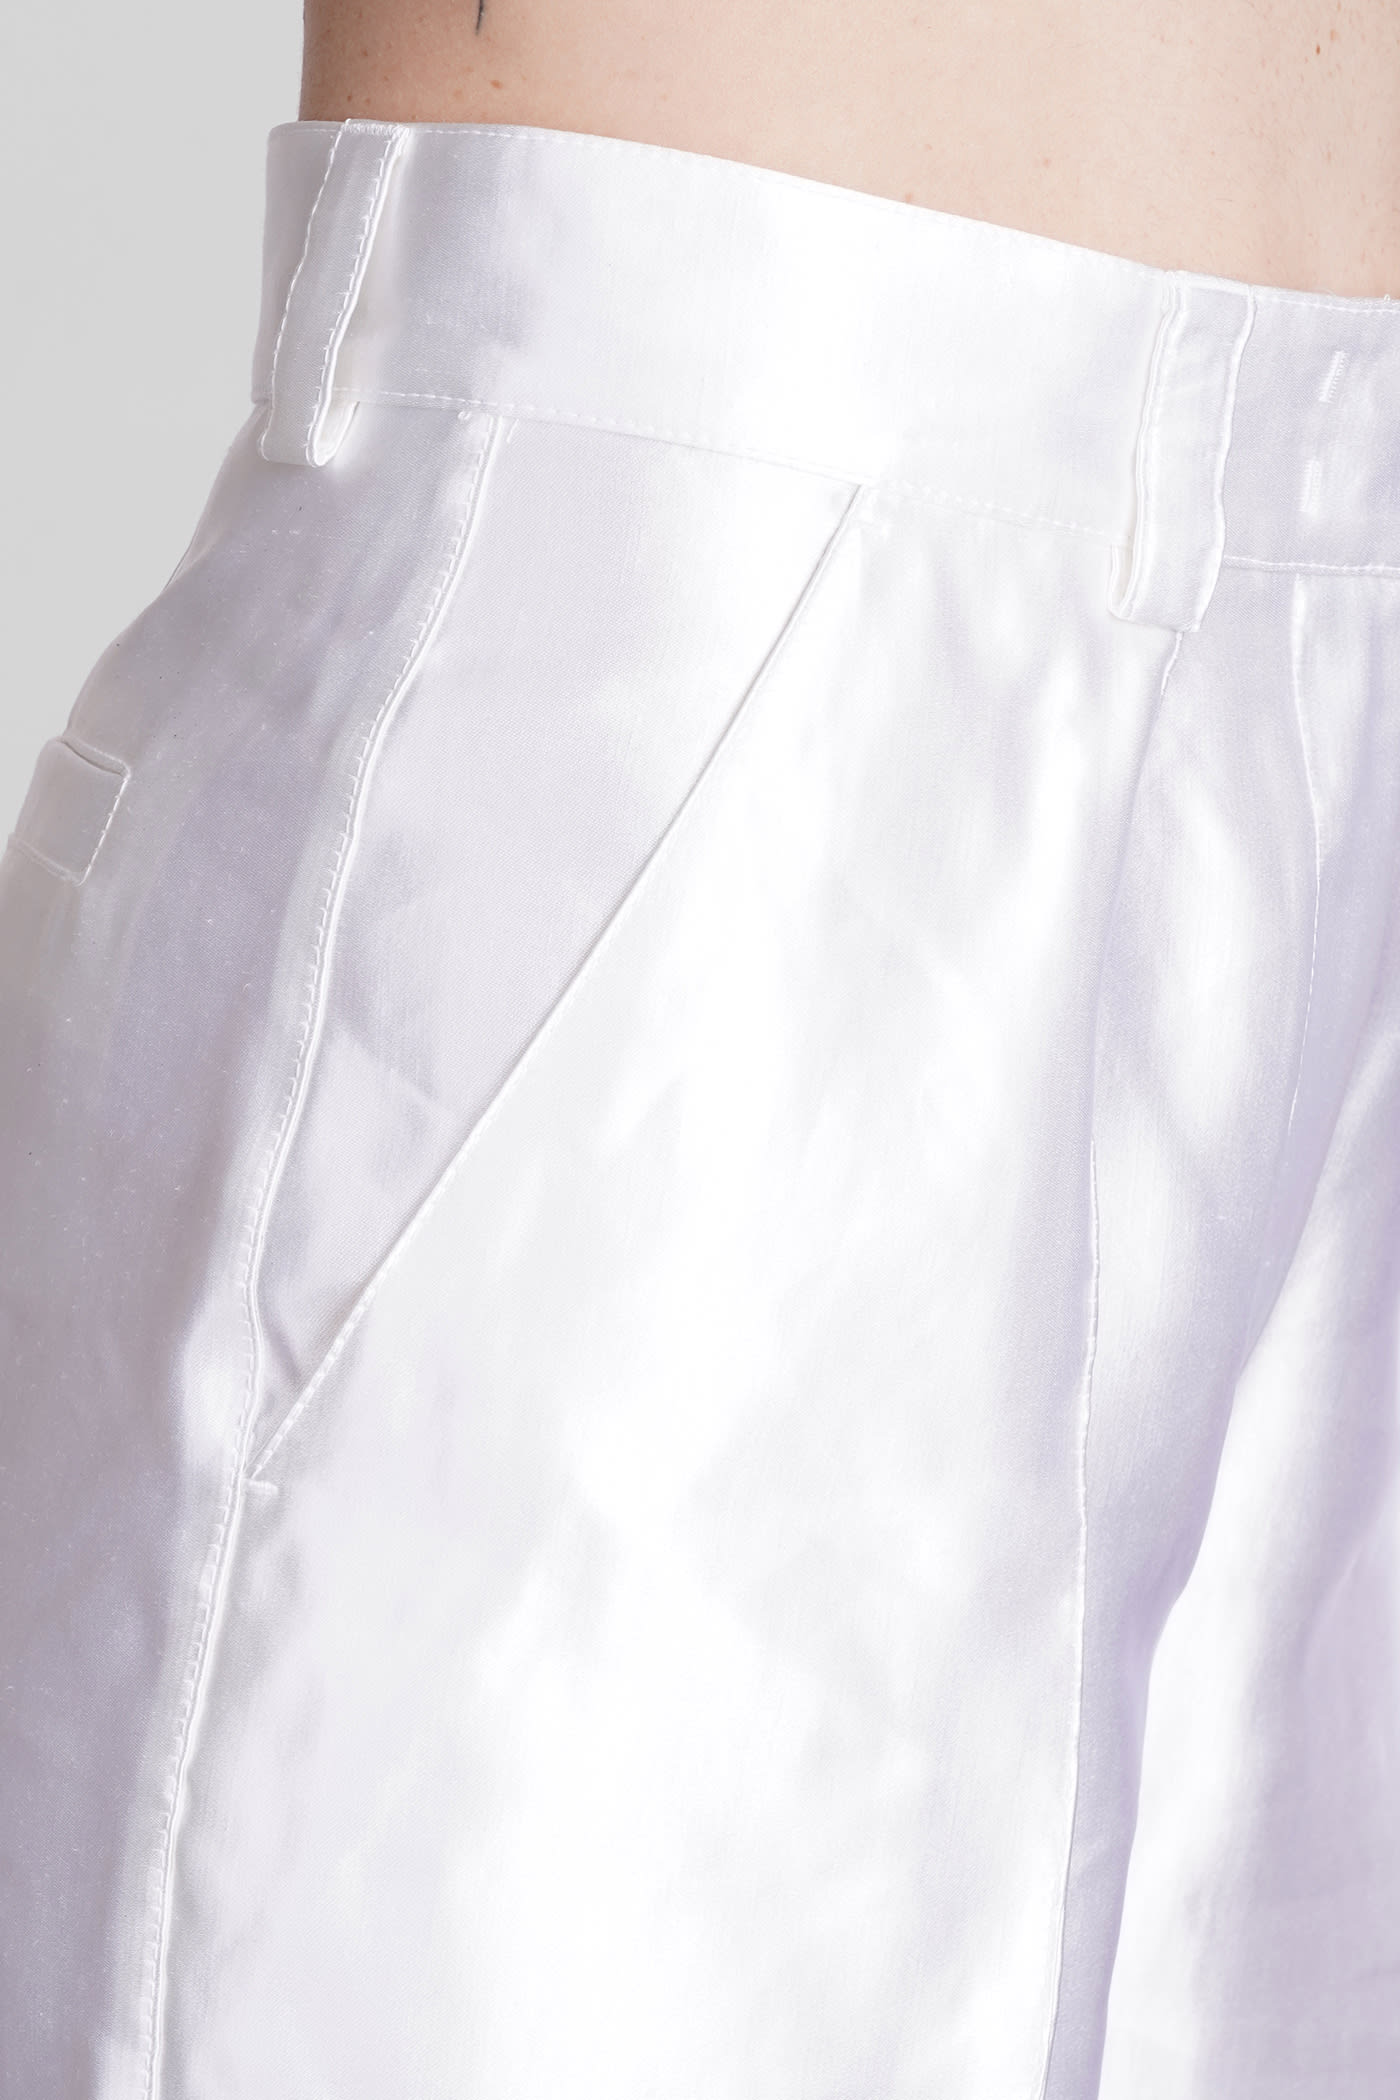 Shop Giorgio Armani Pants In White Linen